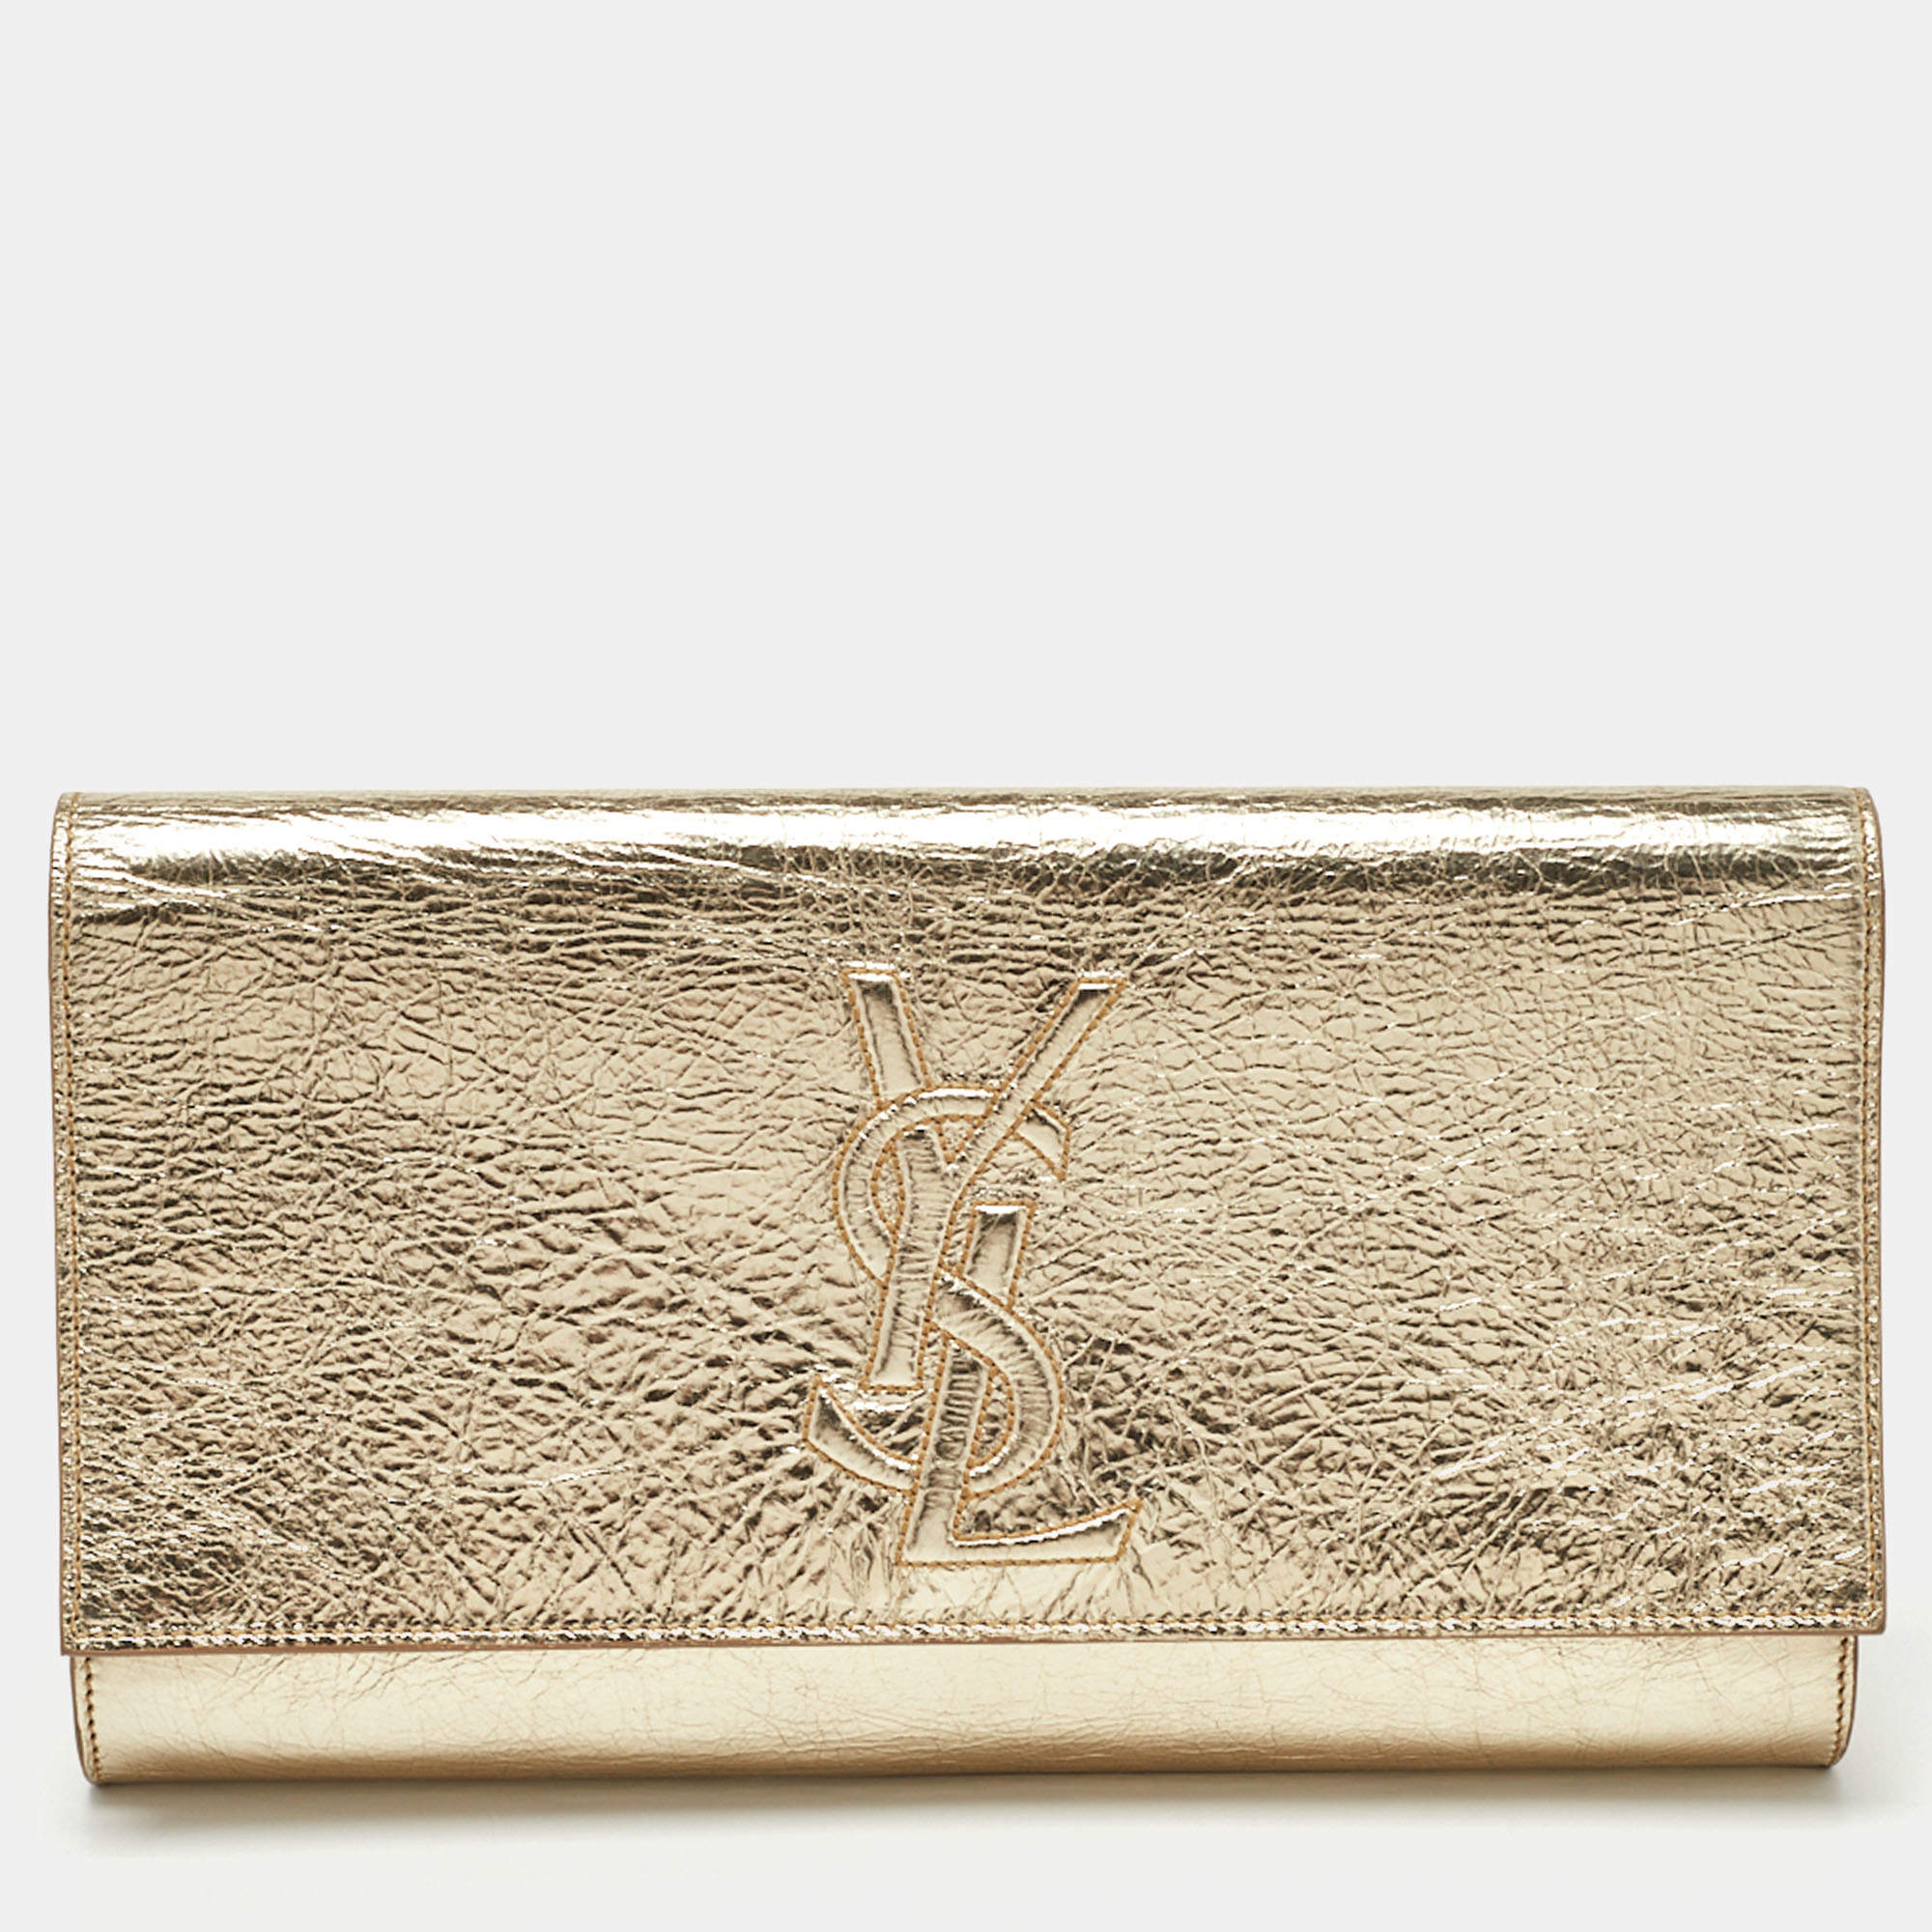 Saint Laurent Women's Gold Leather Metallic Flap Clutch For Sale